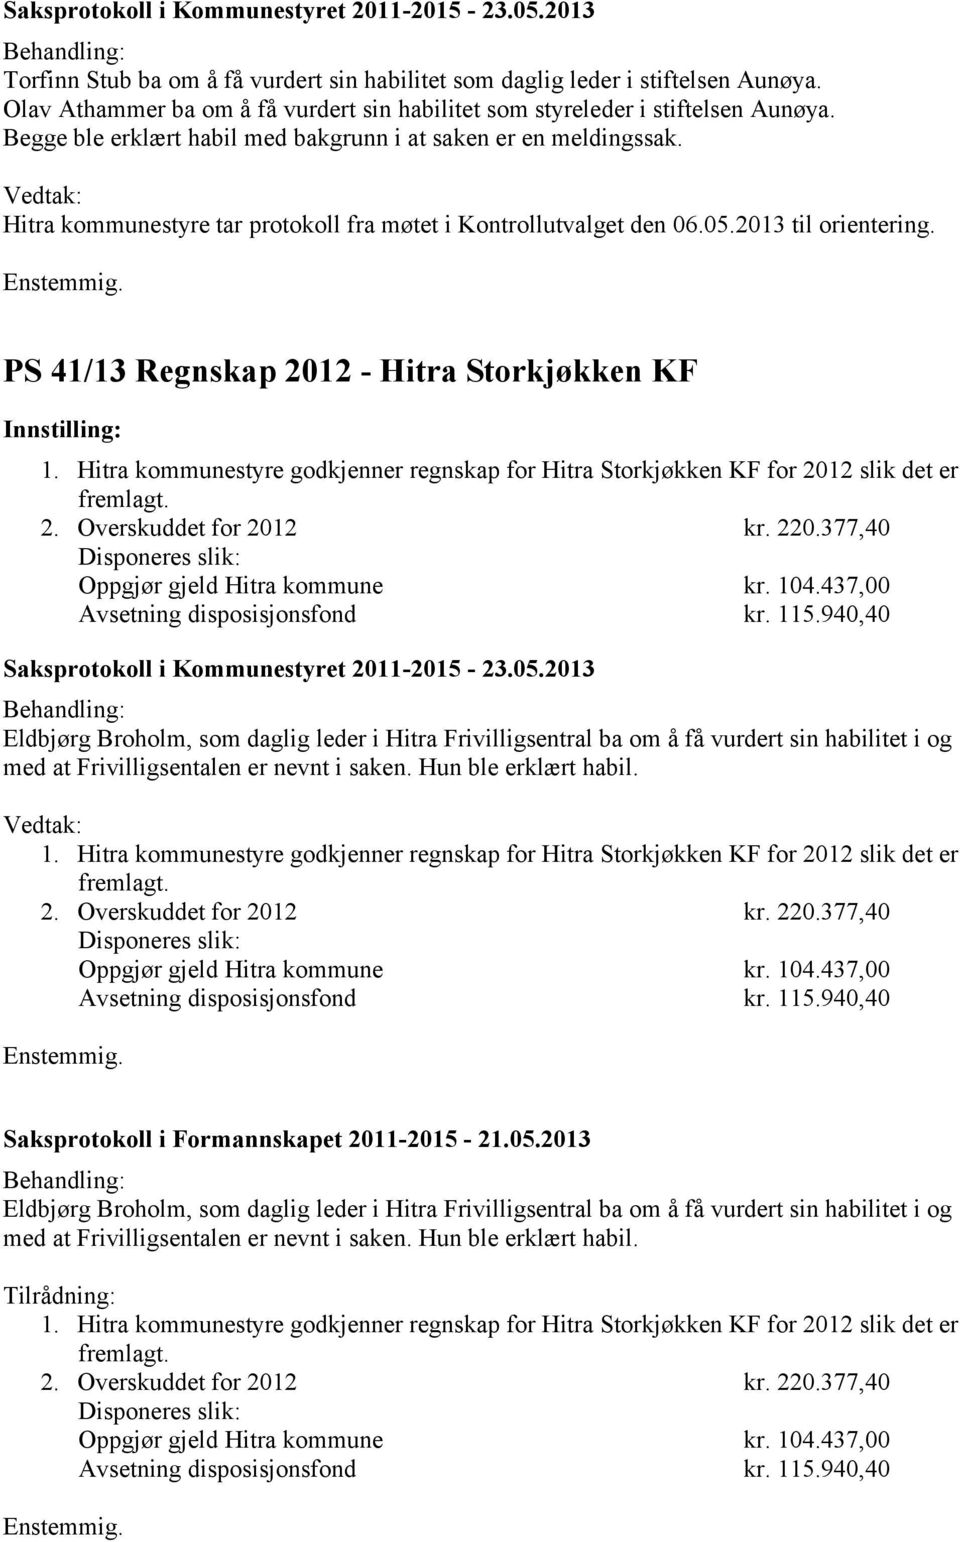 PS 41/13 Regnskap 2012 - Hitra Storkjøkken KF 1. Hitra kommunestyre godkjenner regnskap for Hitra Storkjøkken KF for 2012 slik det er fremlagt. 2. Overskuddet for 2012 kr. 220.